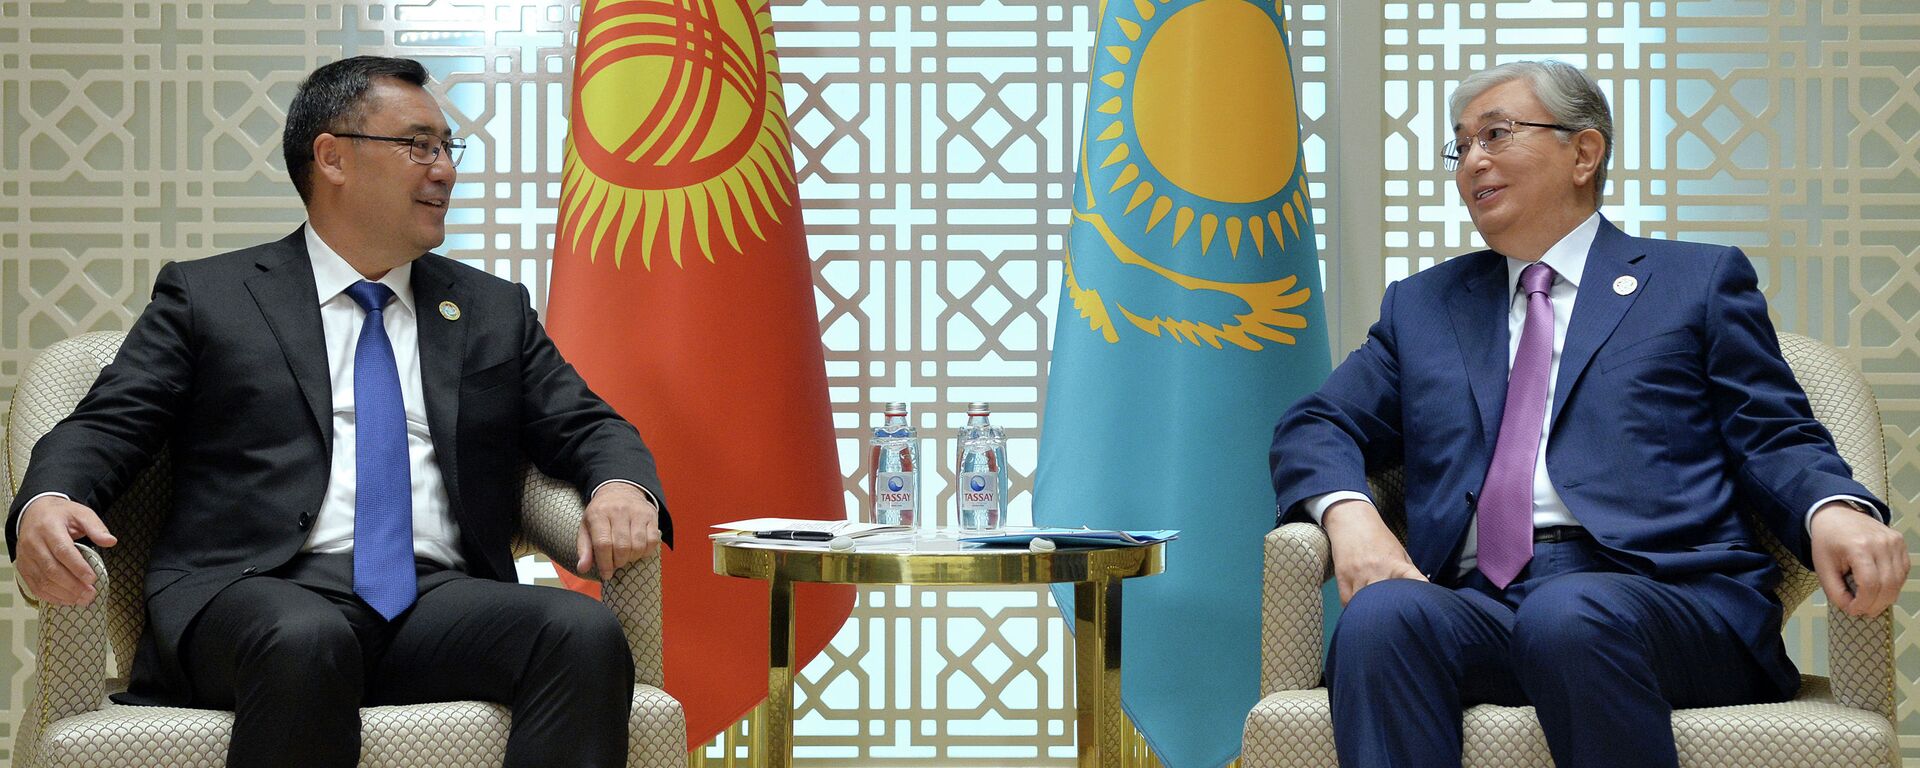 Консультативная встреча глав государств Центральной Азии в Туркменистане - Sputnik Кыргызстан, 1920, 17.01.2022